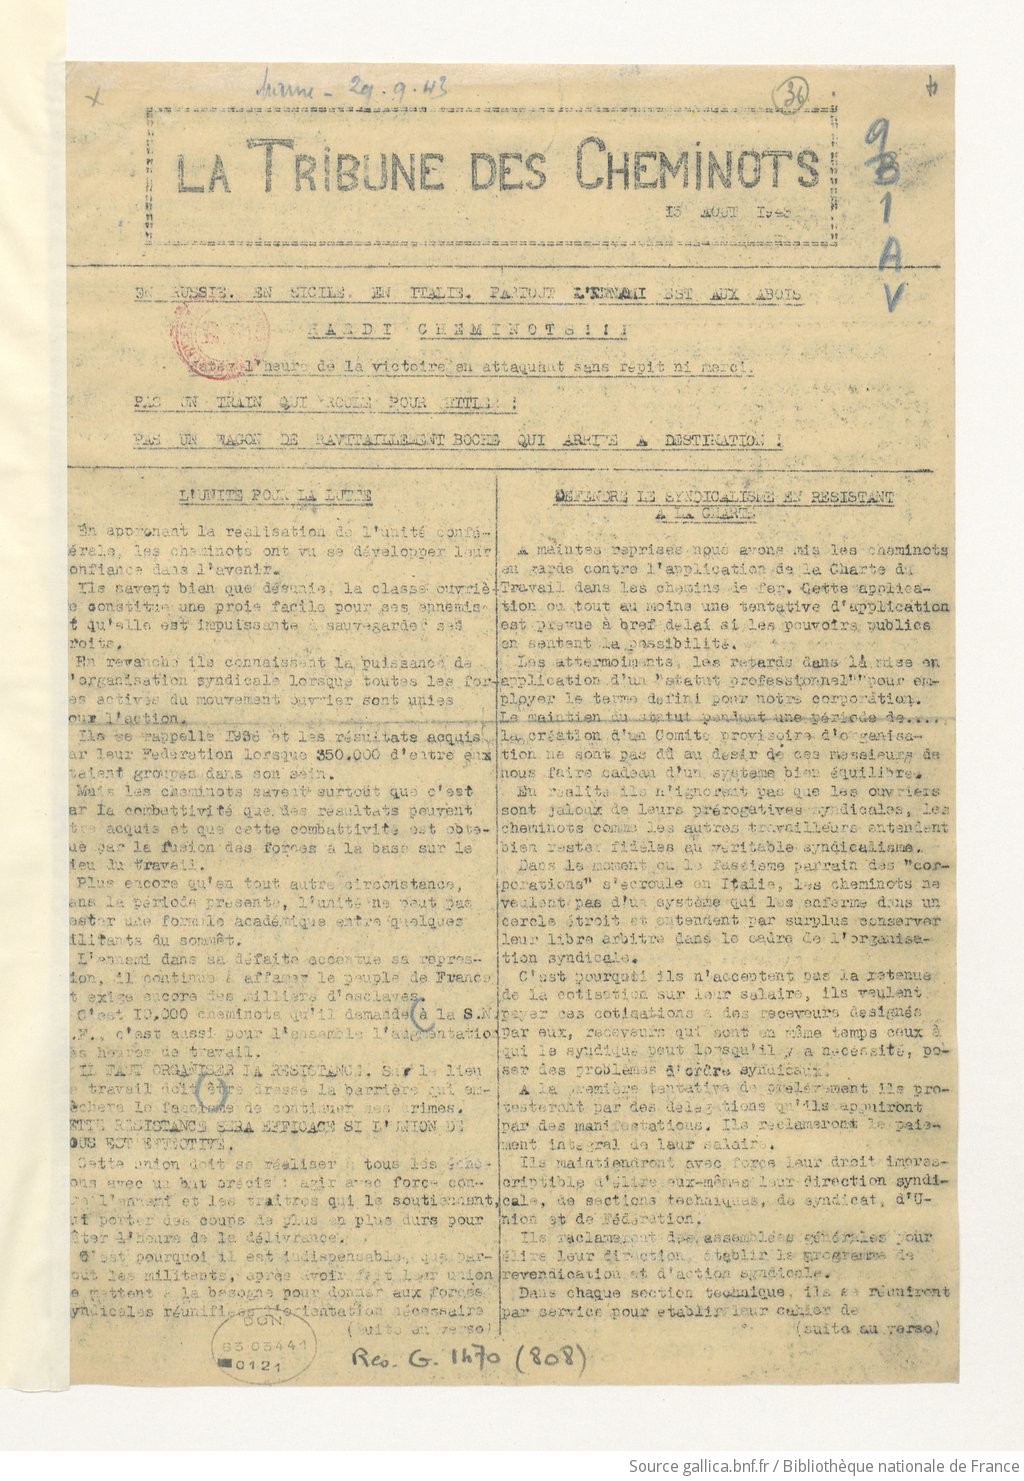 La Tribune des cheminots [clandestine], [sans numérotation], 15 août 1943